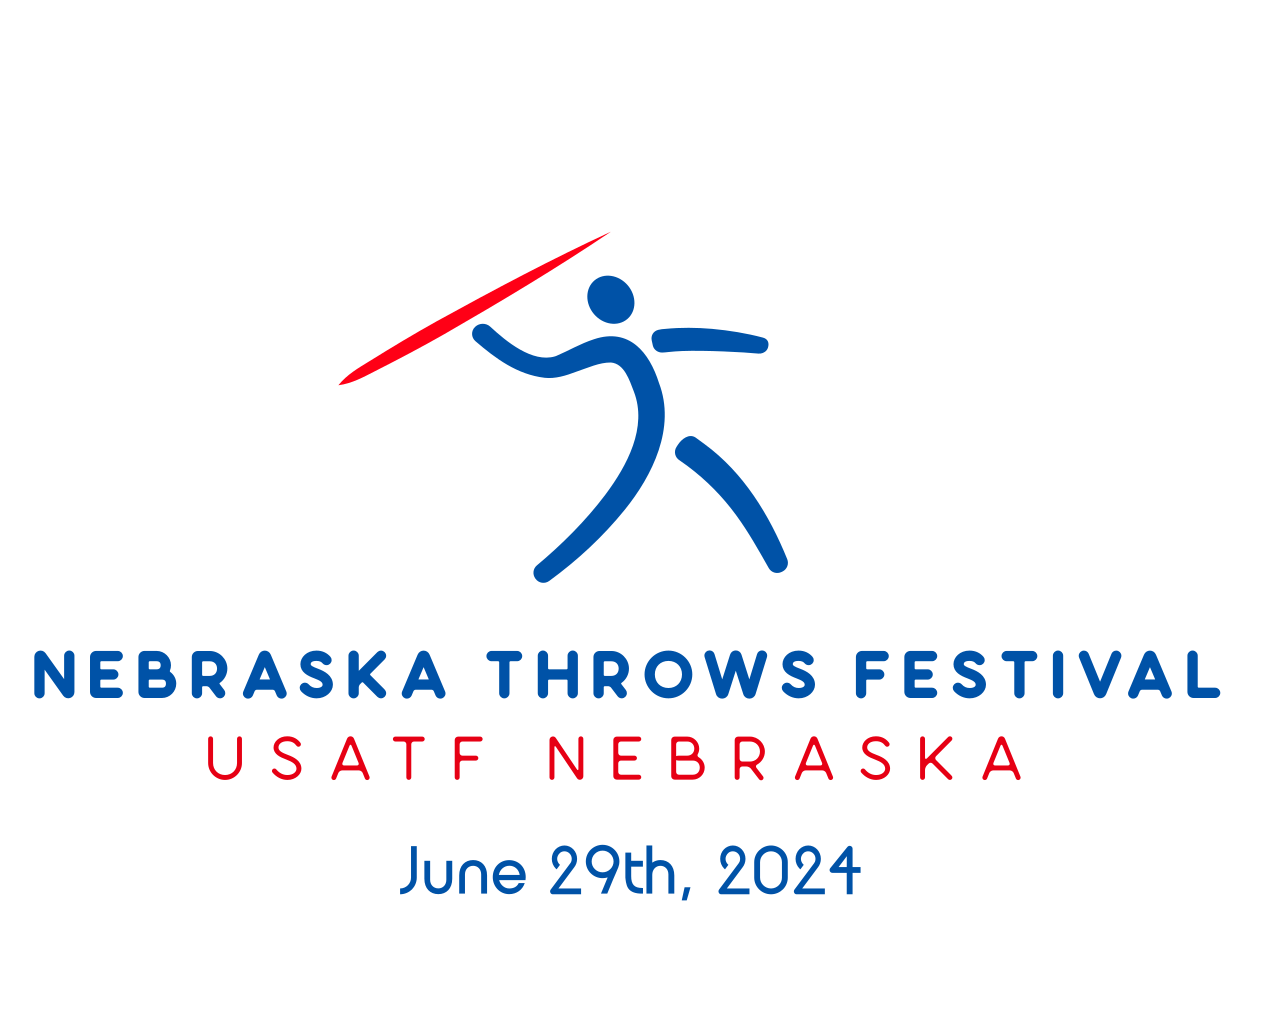 The Nebraska Throws Festival is back!